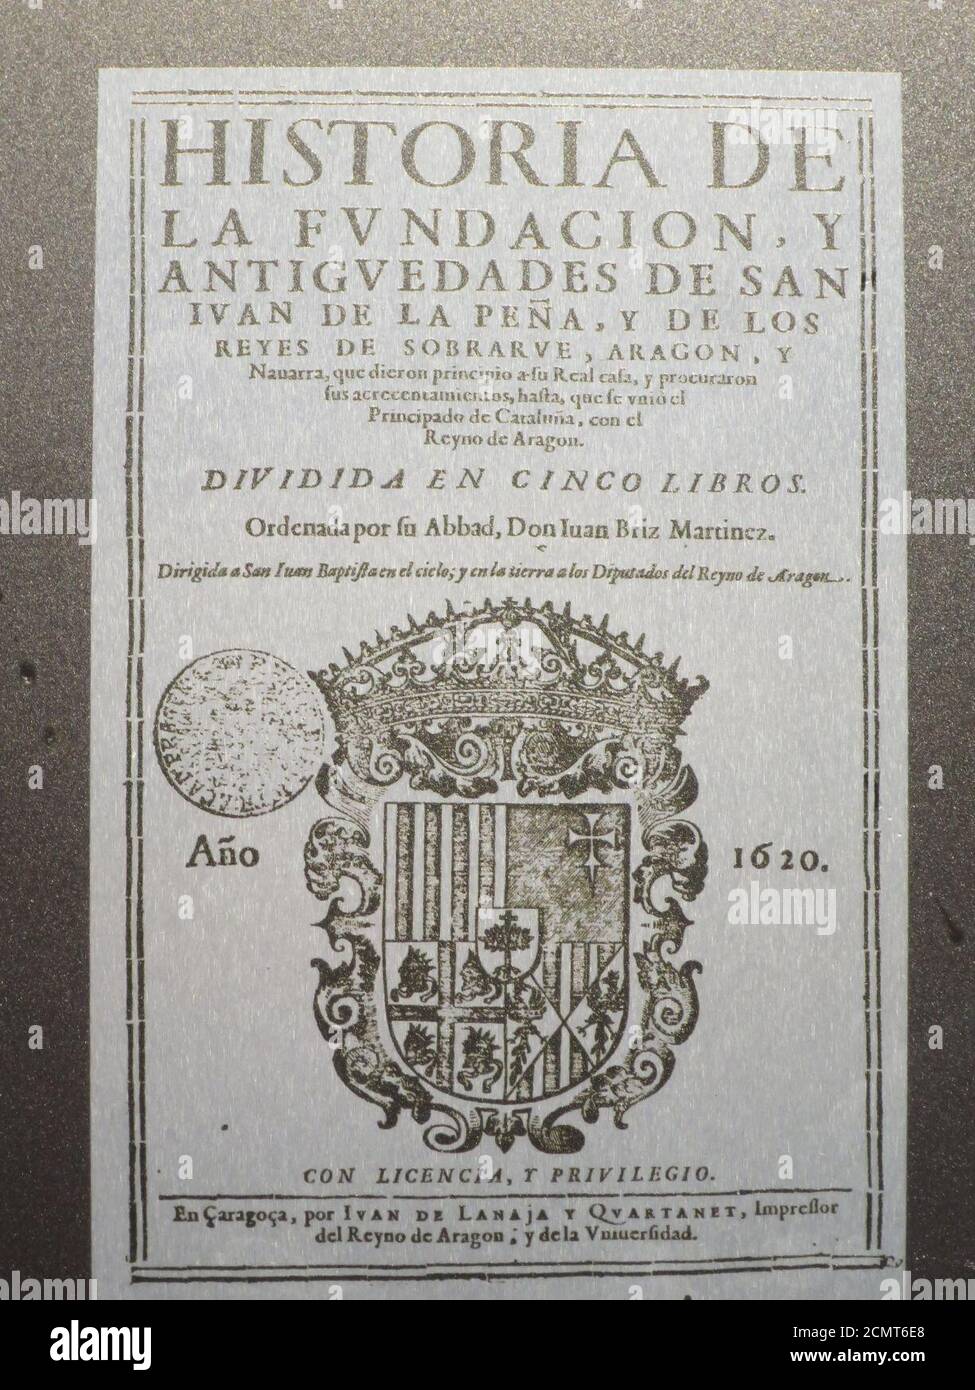 Juan Briz Martinez- Historia de la Fundacion, y antiguedades de San Juan de la Peña. Stock Photo